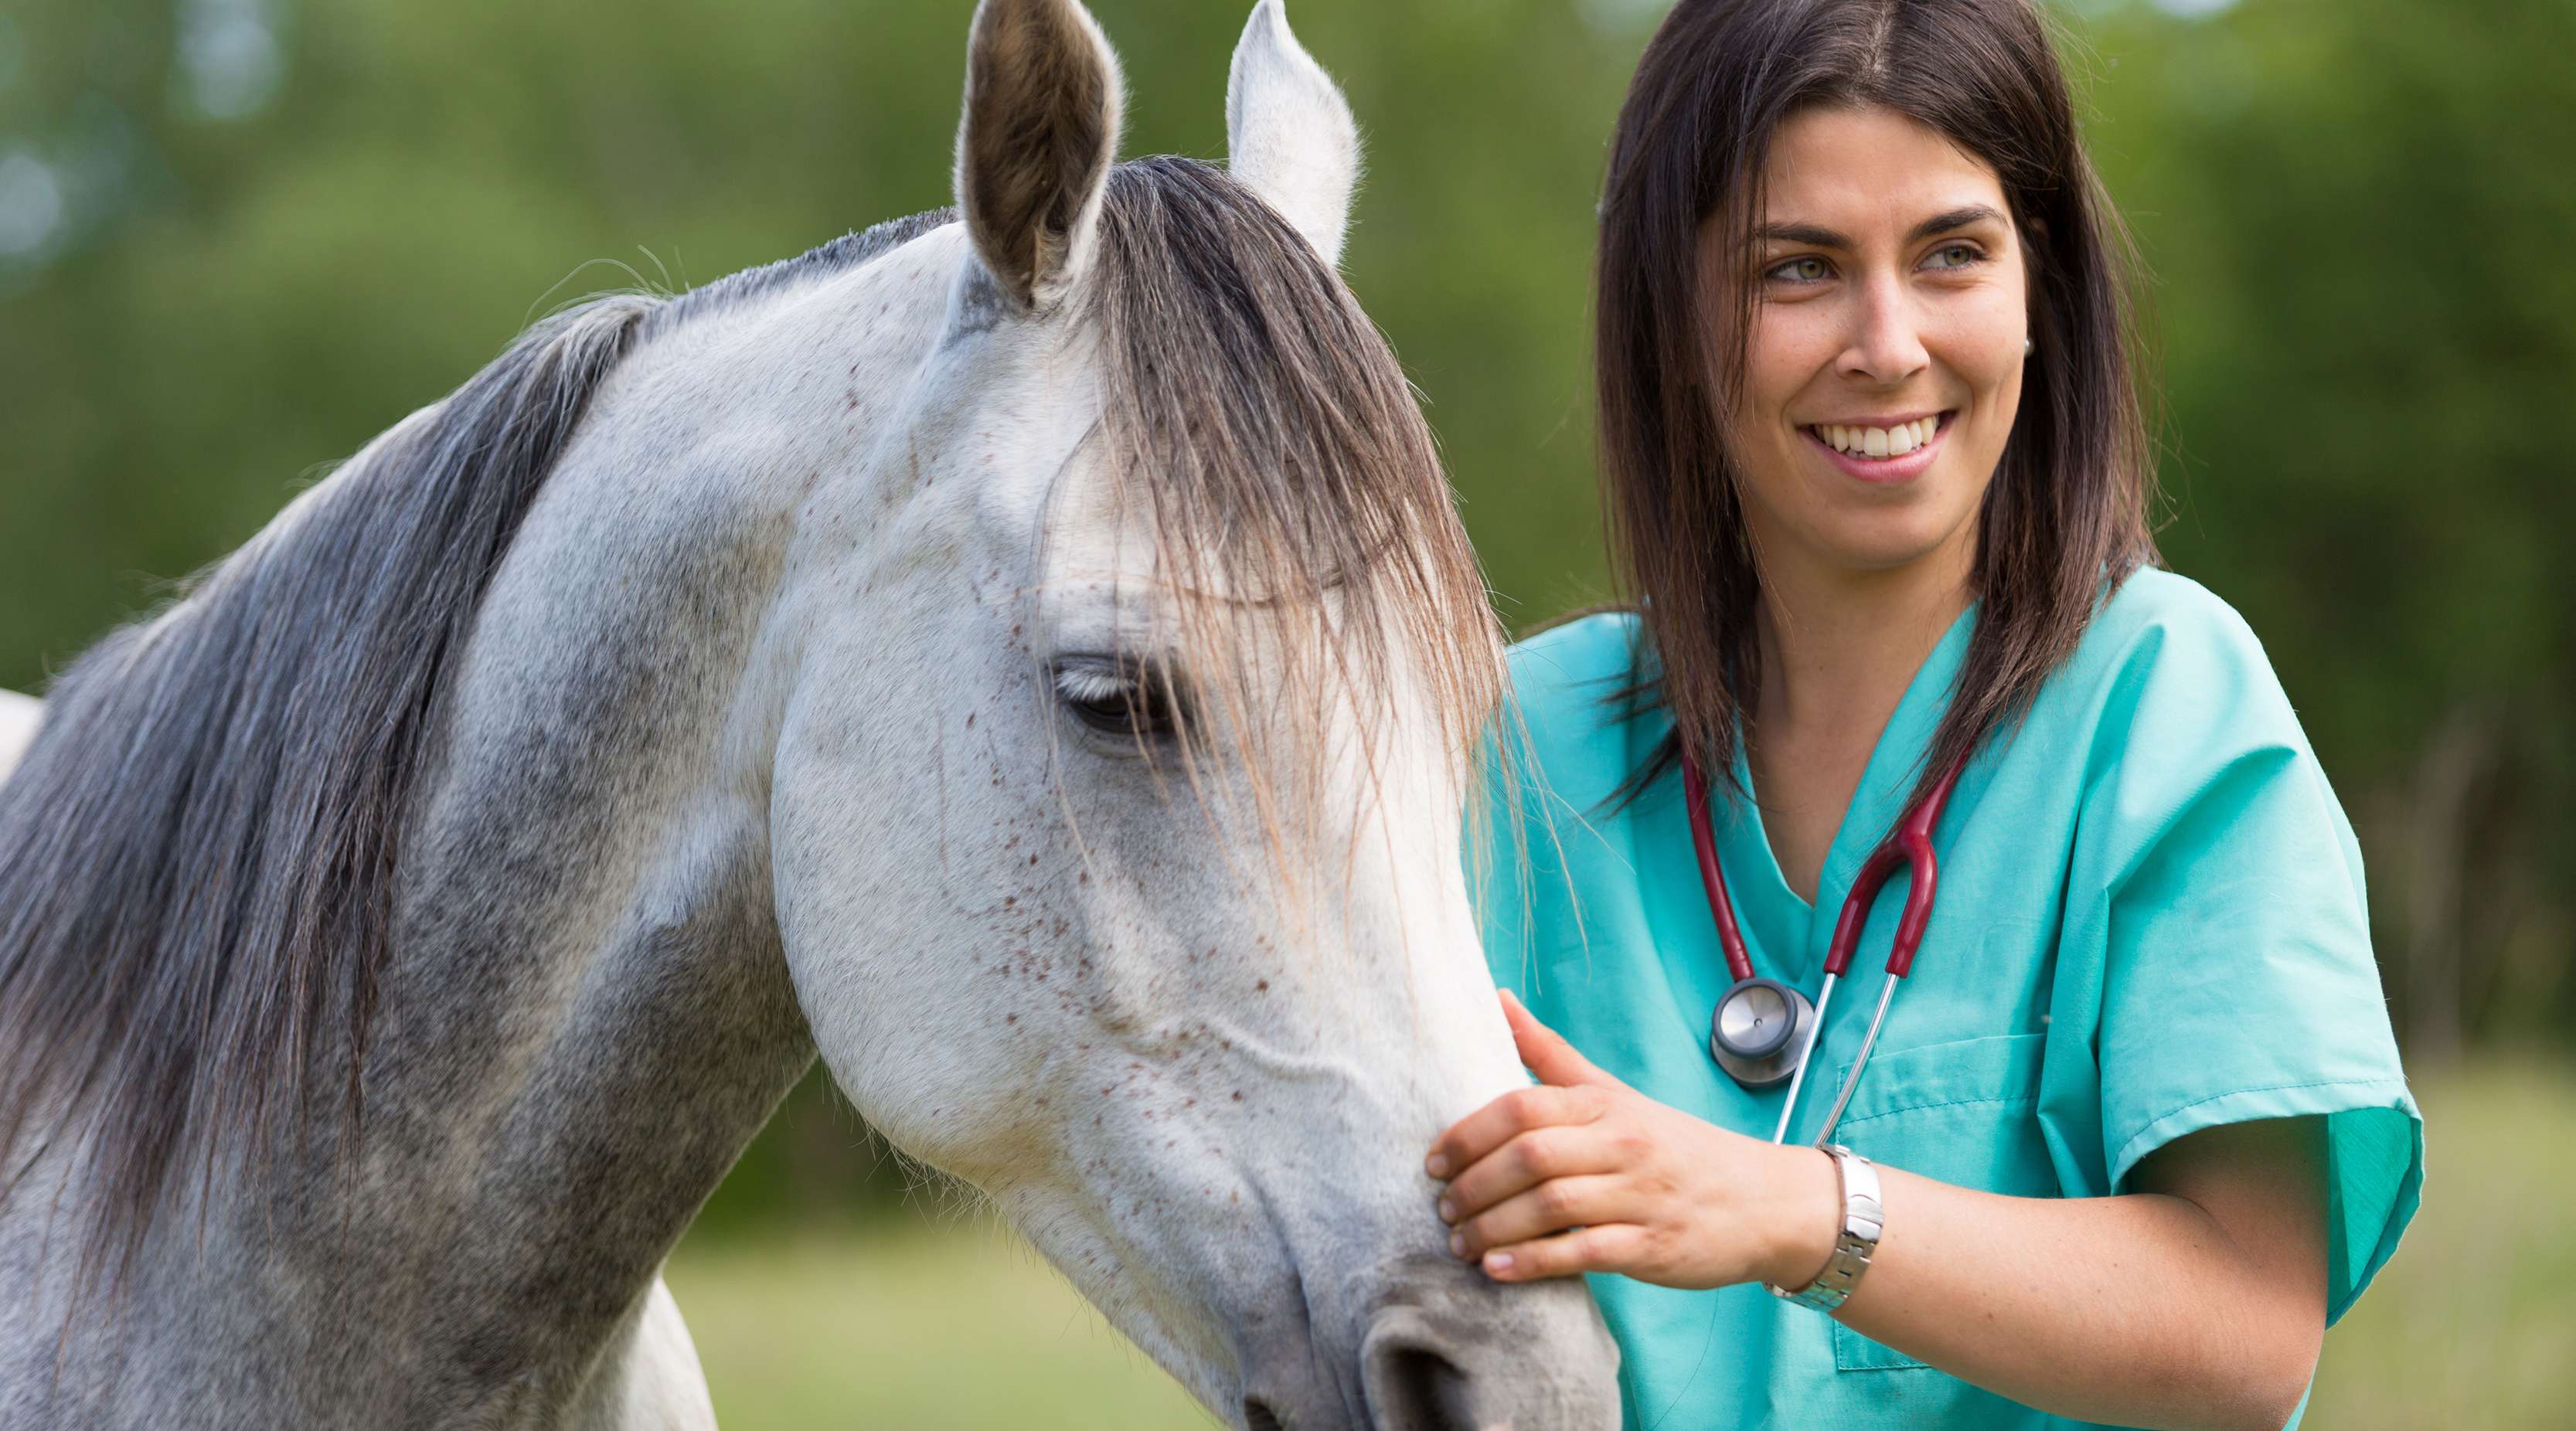 Allianz - Pferdekrankheiten vorbeugen: Tierärztin im grünen streichelt Pferd am Kopf